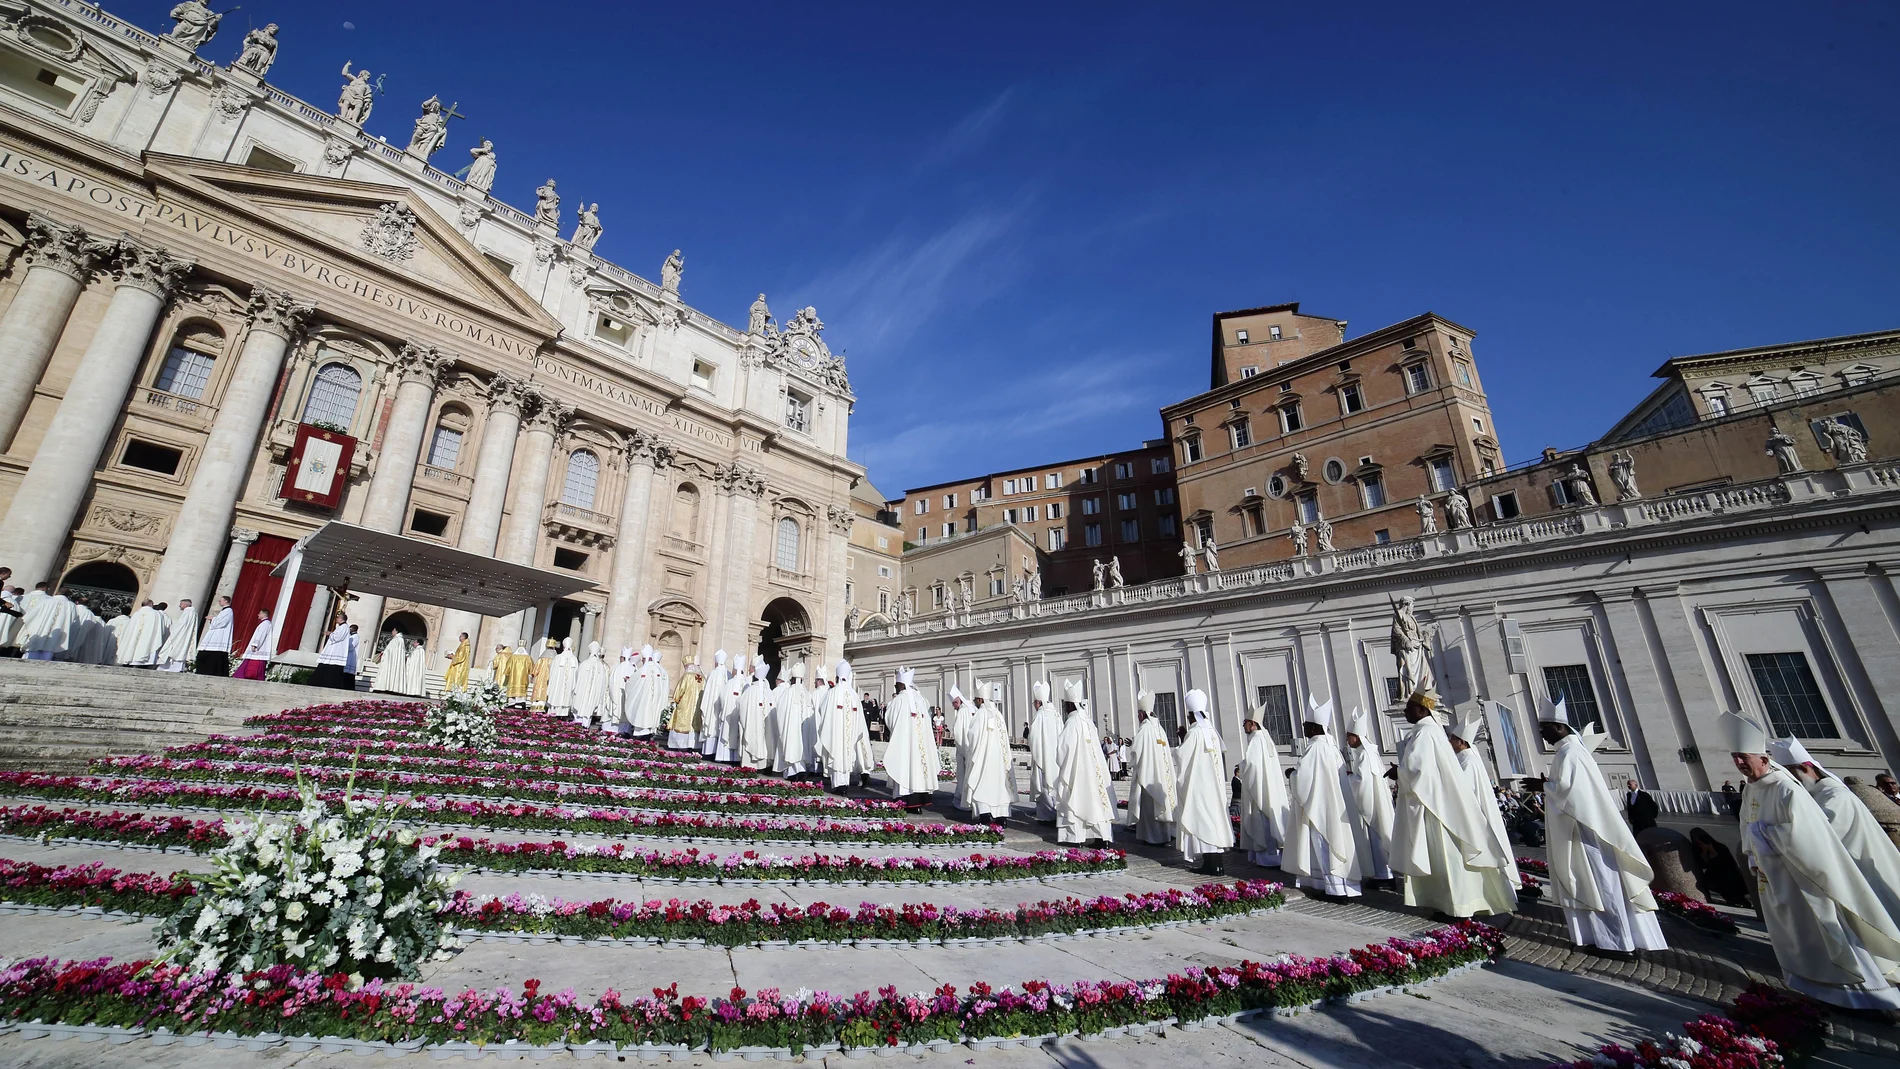 Vaticano.- El Vaticano lanza una página web para contratar a los laicos que quieran trabajar en la Santa Sede